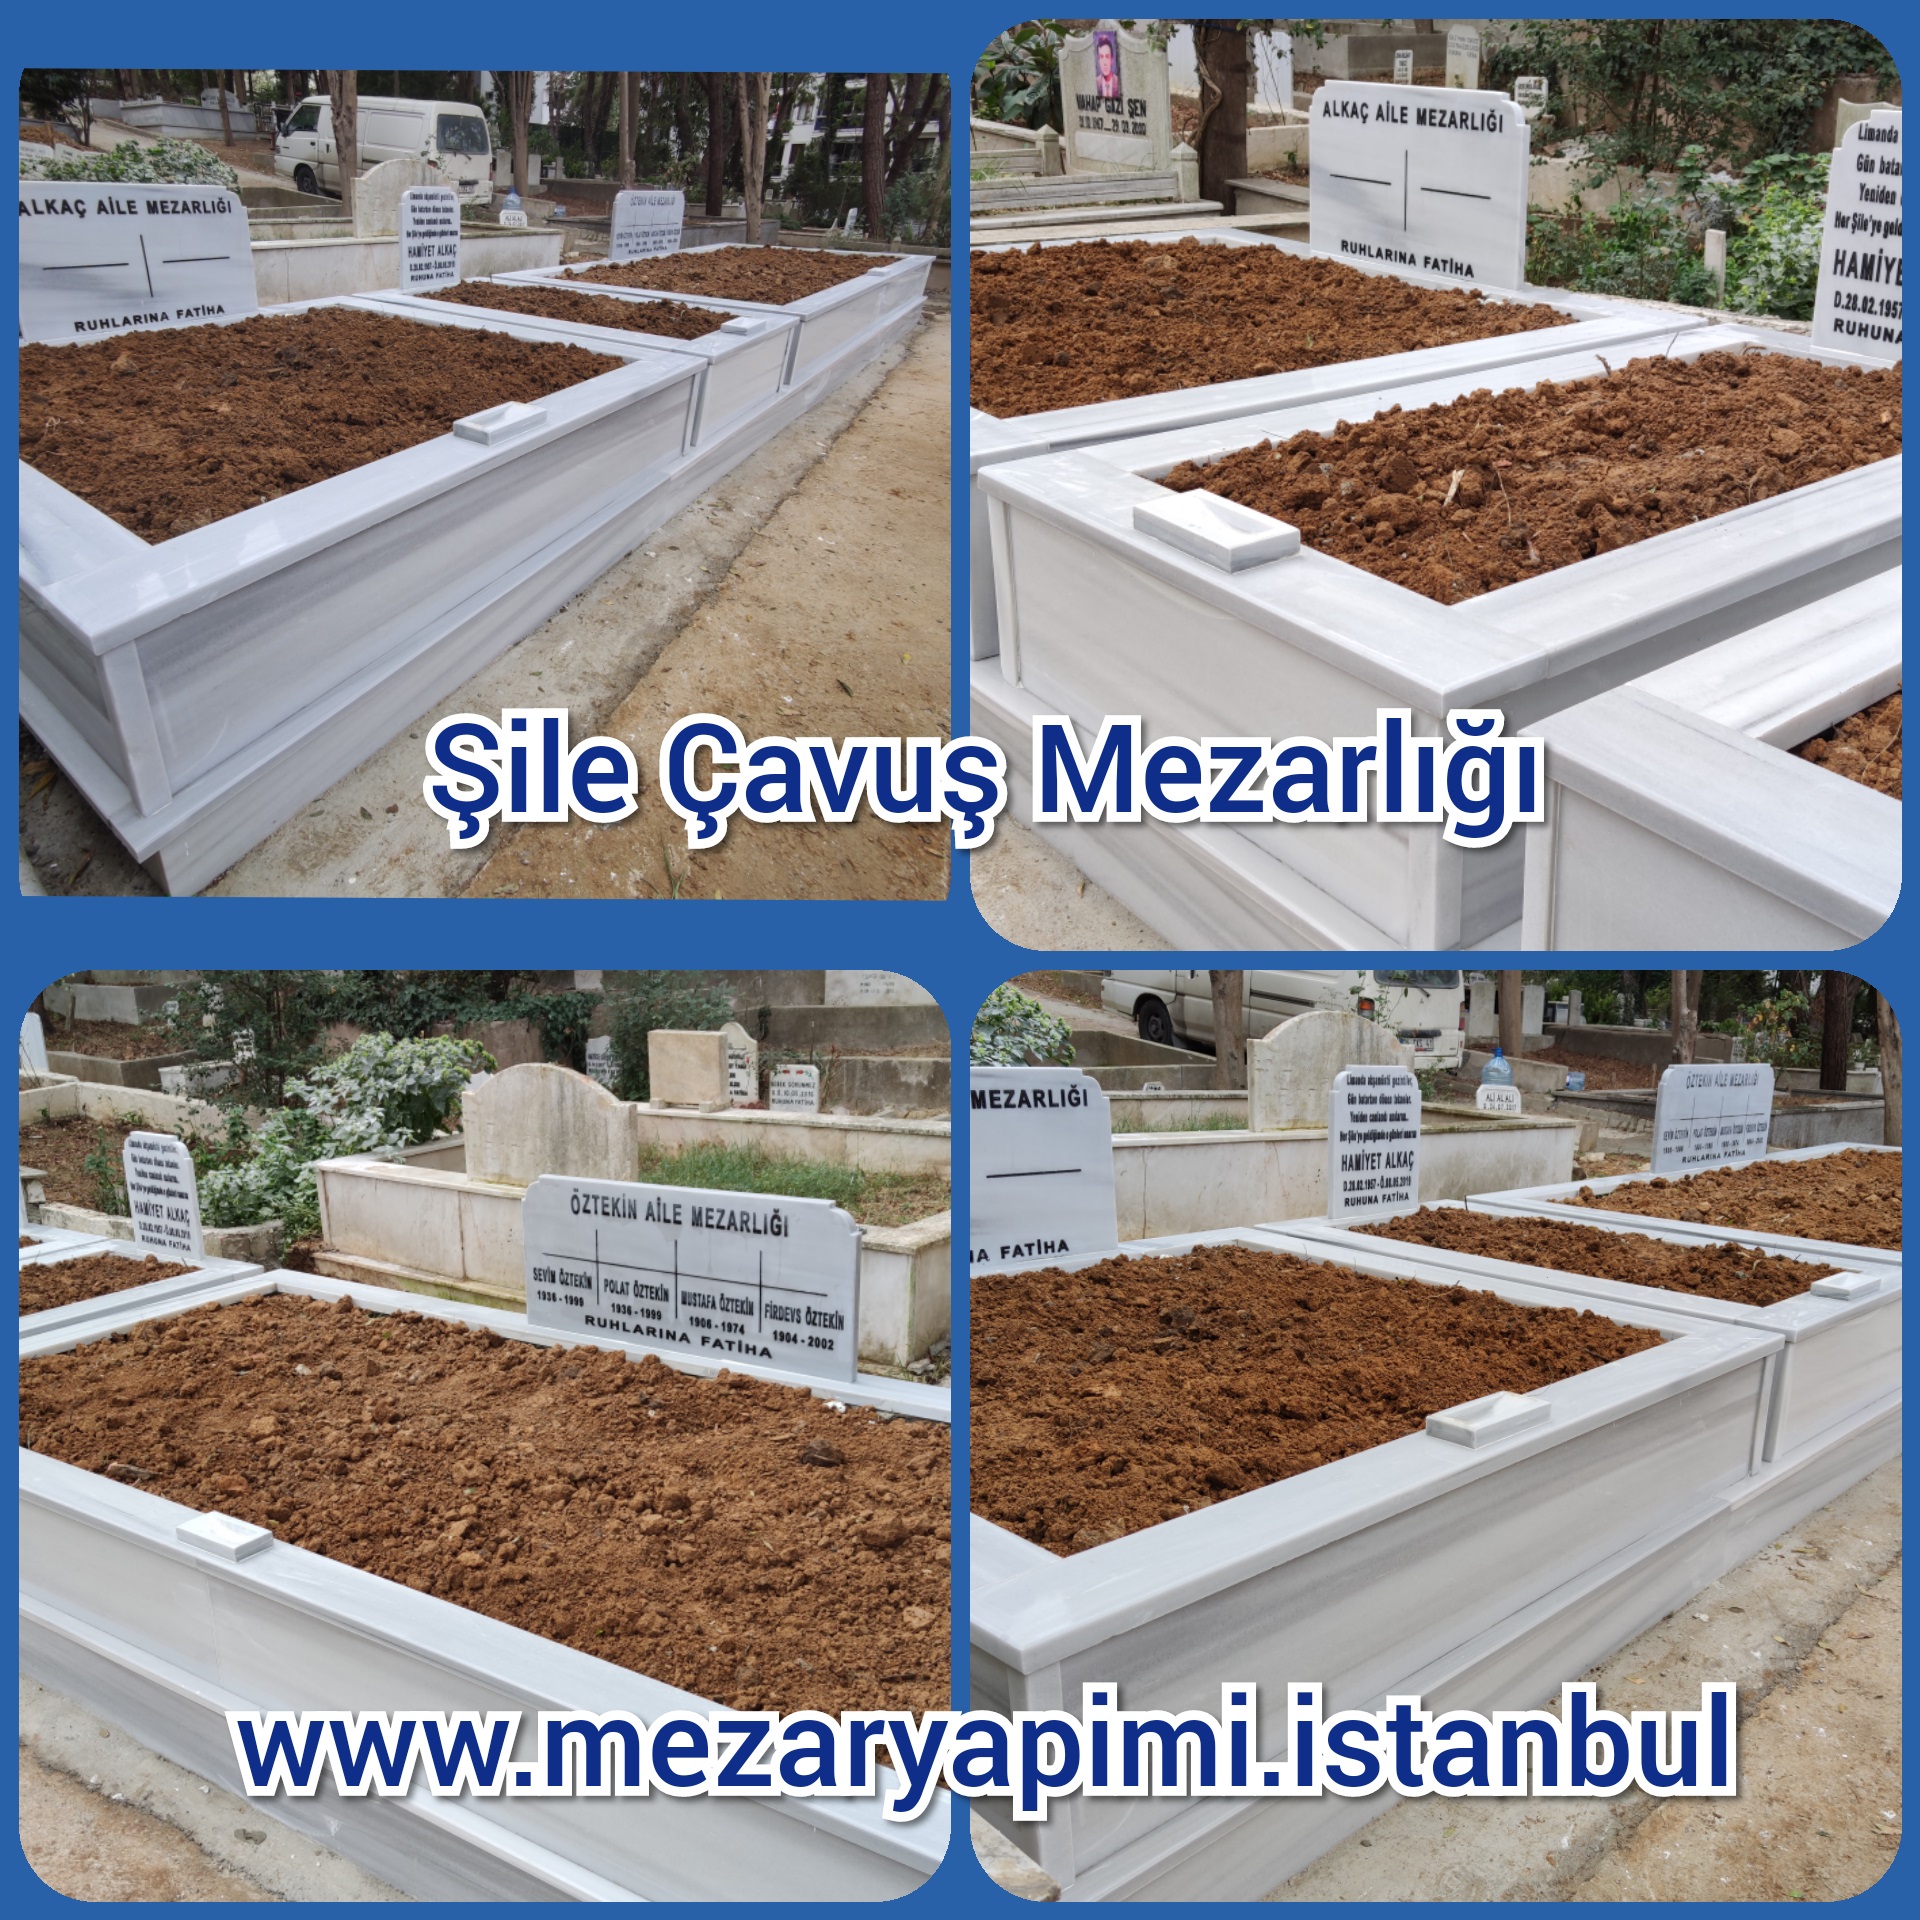 Şile Çavuş Mezarlığı Mermer Mezar Yapımı Alkaç ve Öztekin Ailesi